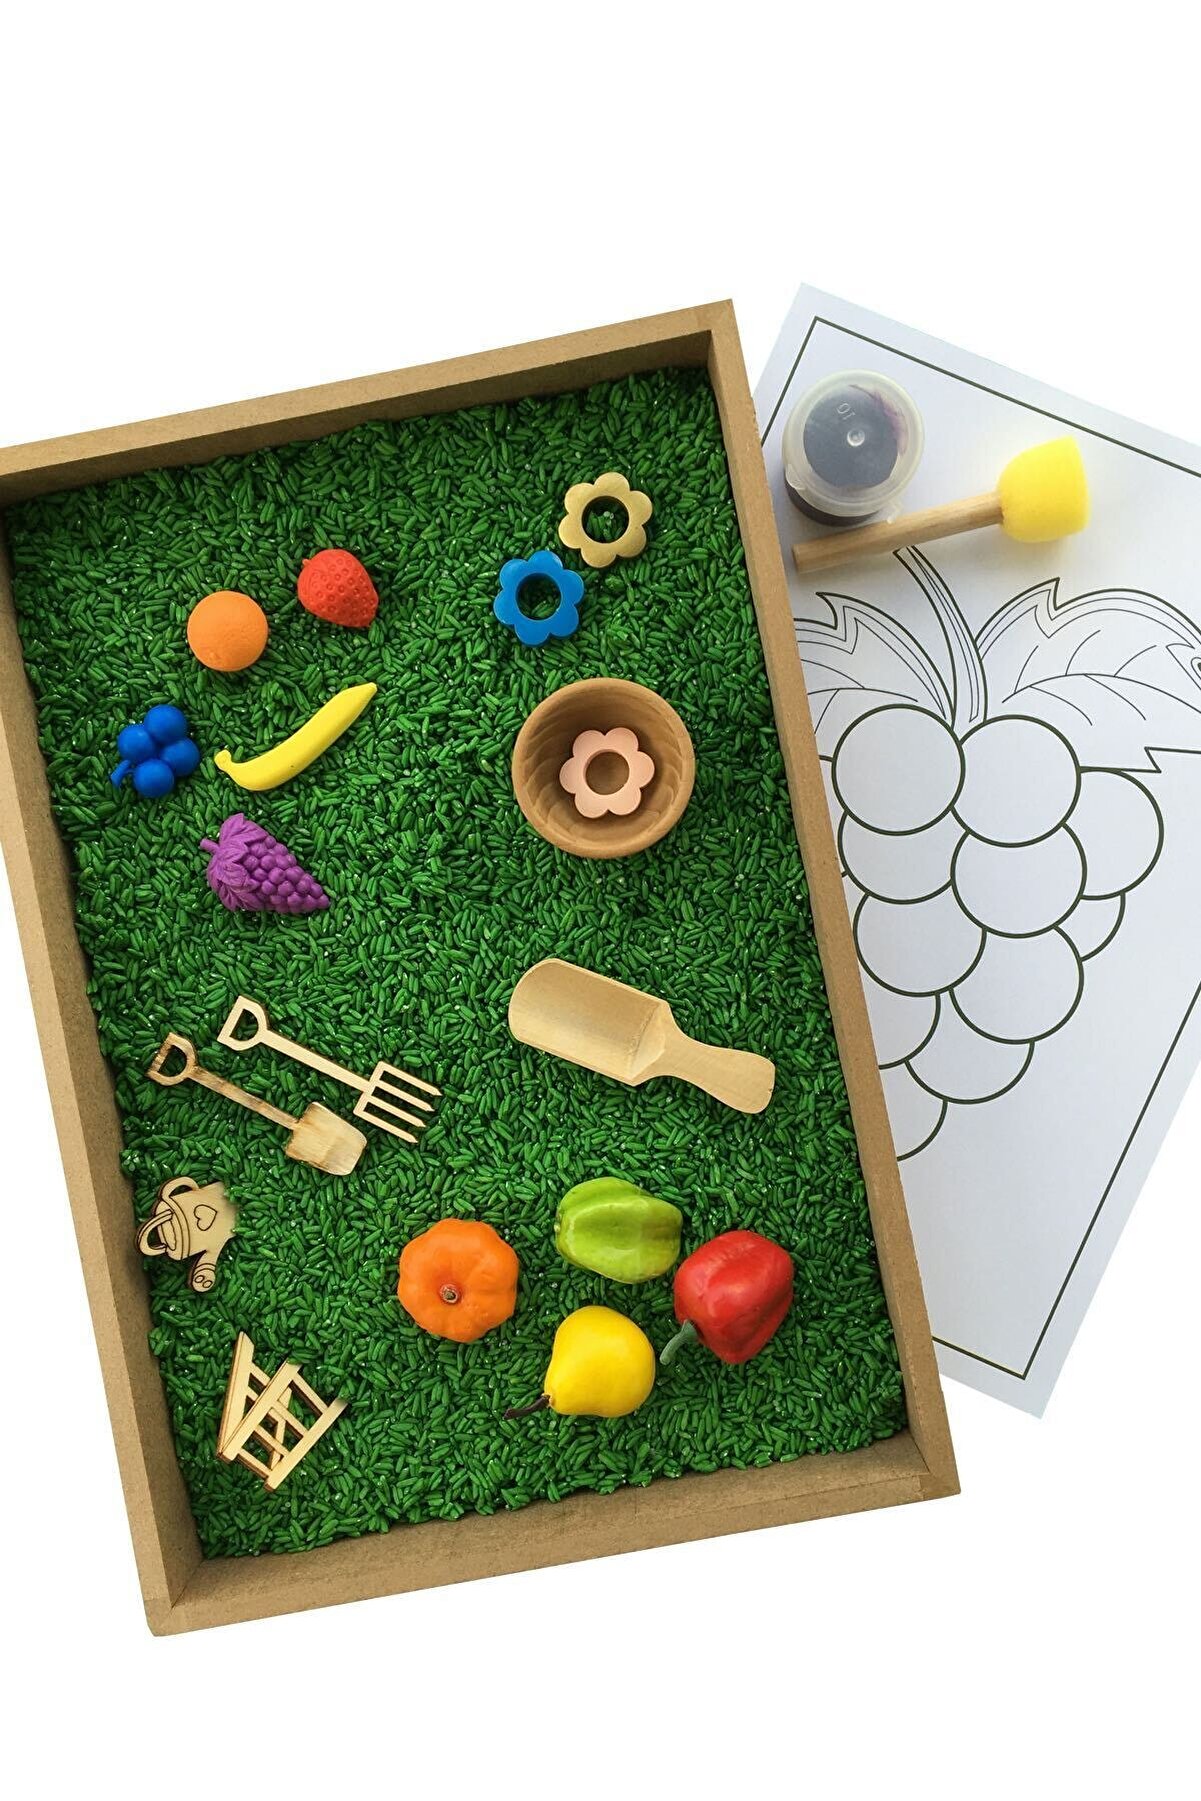 Beyaz Tavşan Oyun Evi Ahşap Etkinlik Seti - Montessori Oyuncak